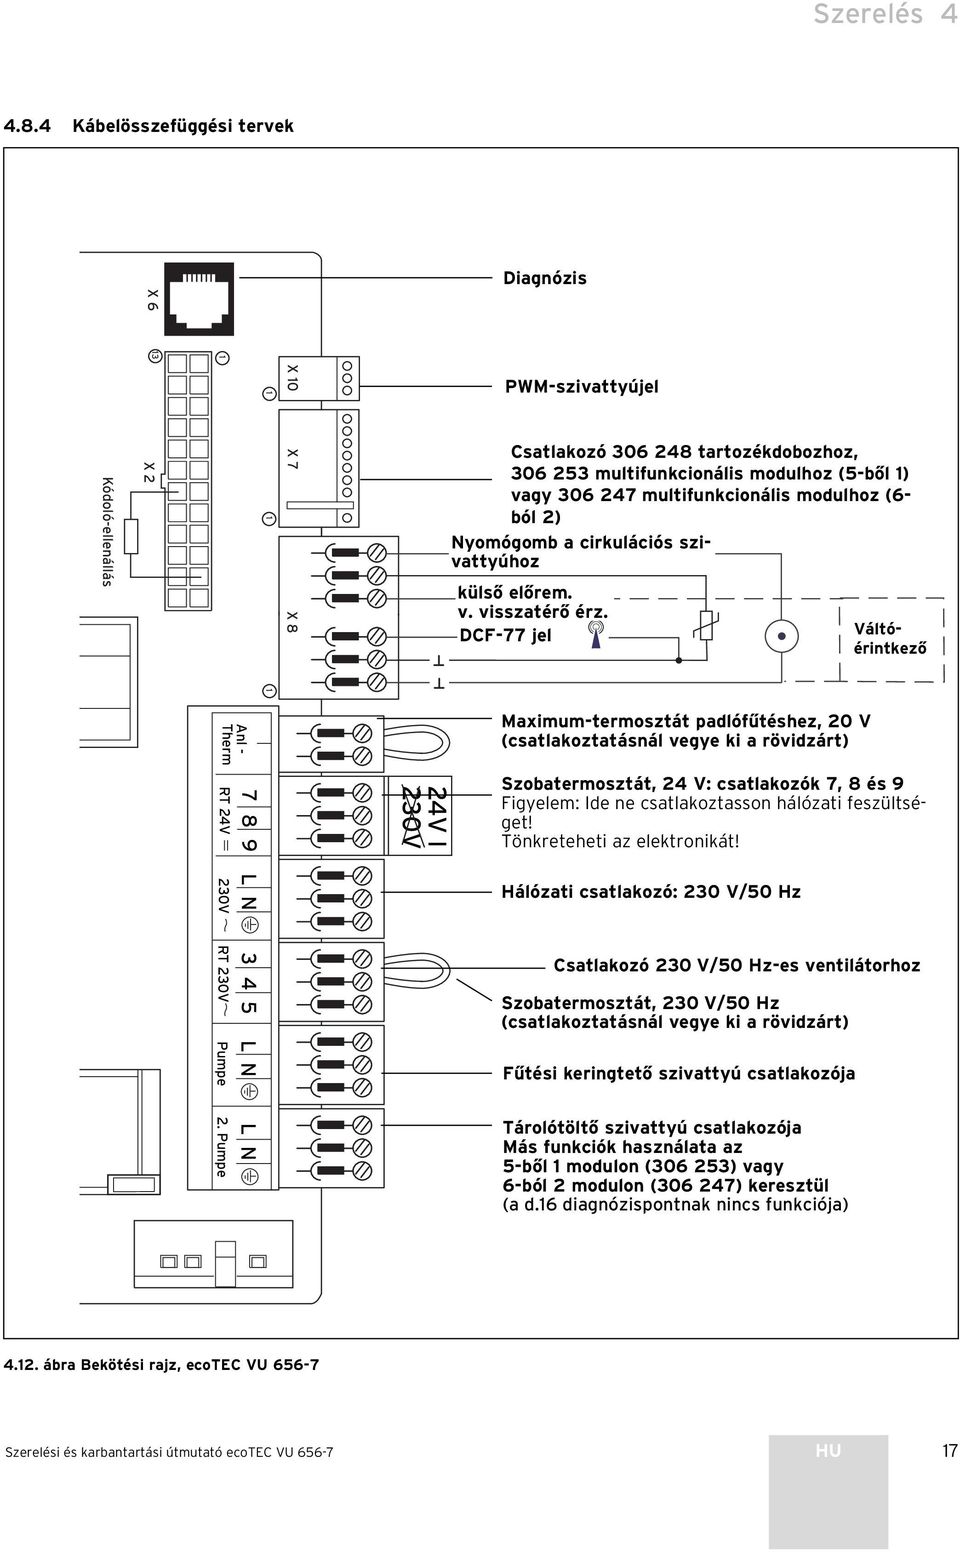 modulhoz (6- ból 2) Nyomógomb a cirkulációs szivattyúhoz külső előrem. v. visszatérő érz. DCF-77 jel Váltóérintkező Anl - Therm RT 24V 20V RT 20V Pumpe 2.